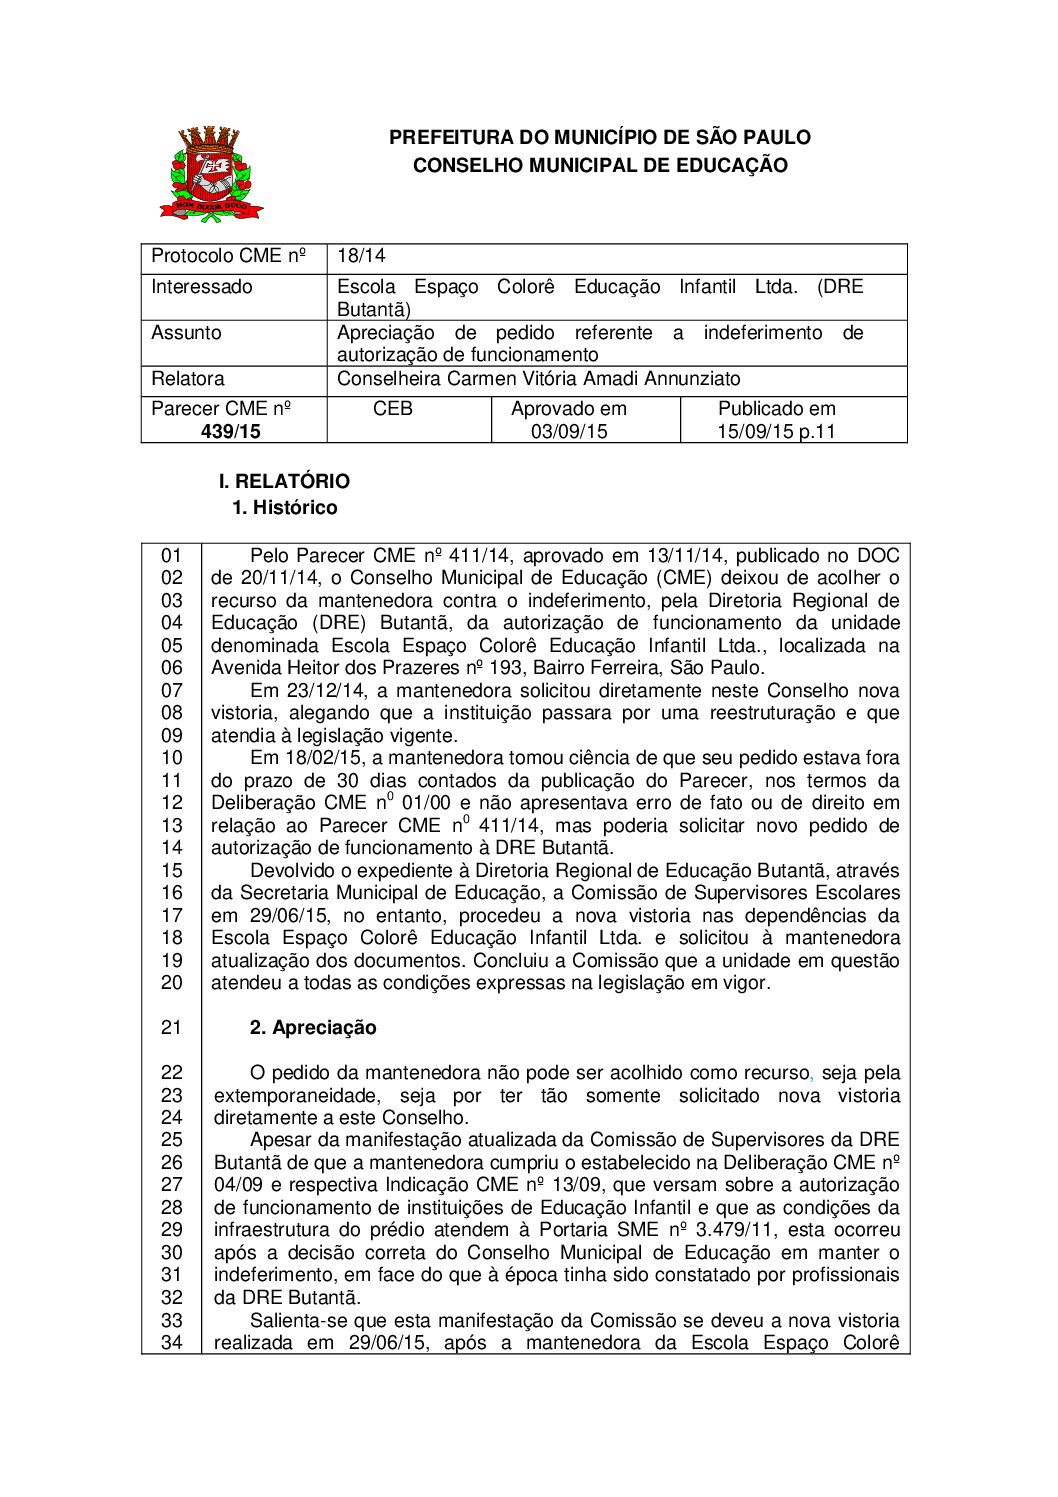 Parecer CME nº 439/2015 - Escola Espaço Colorê Educação Infantil Ltda (DRE Butantã) - Apreciação de pedido referente a indeferimento de autorização de funcionamento 